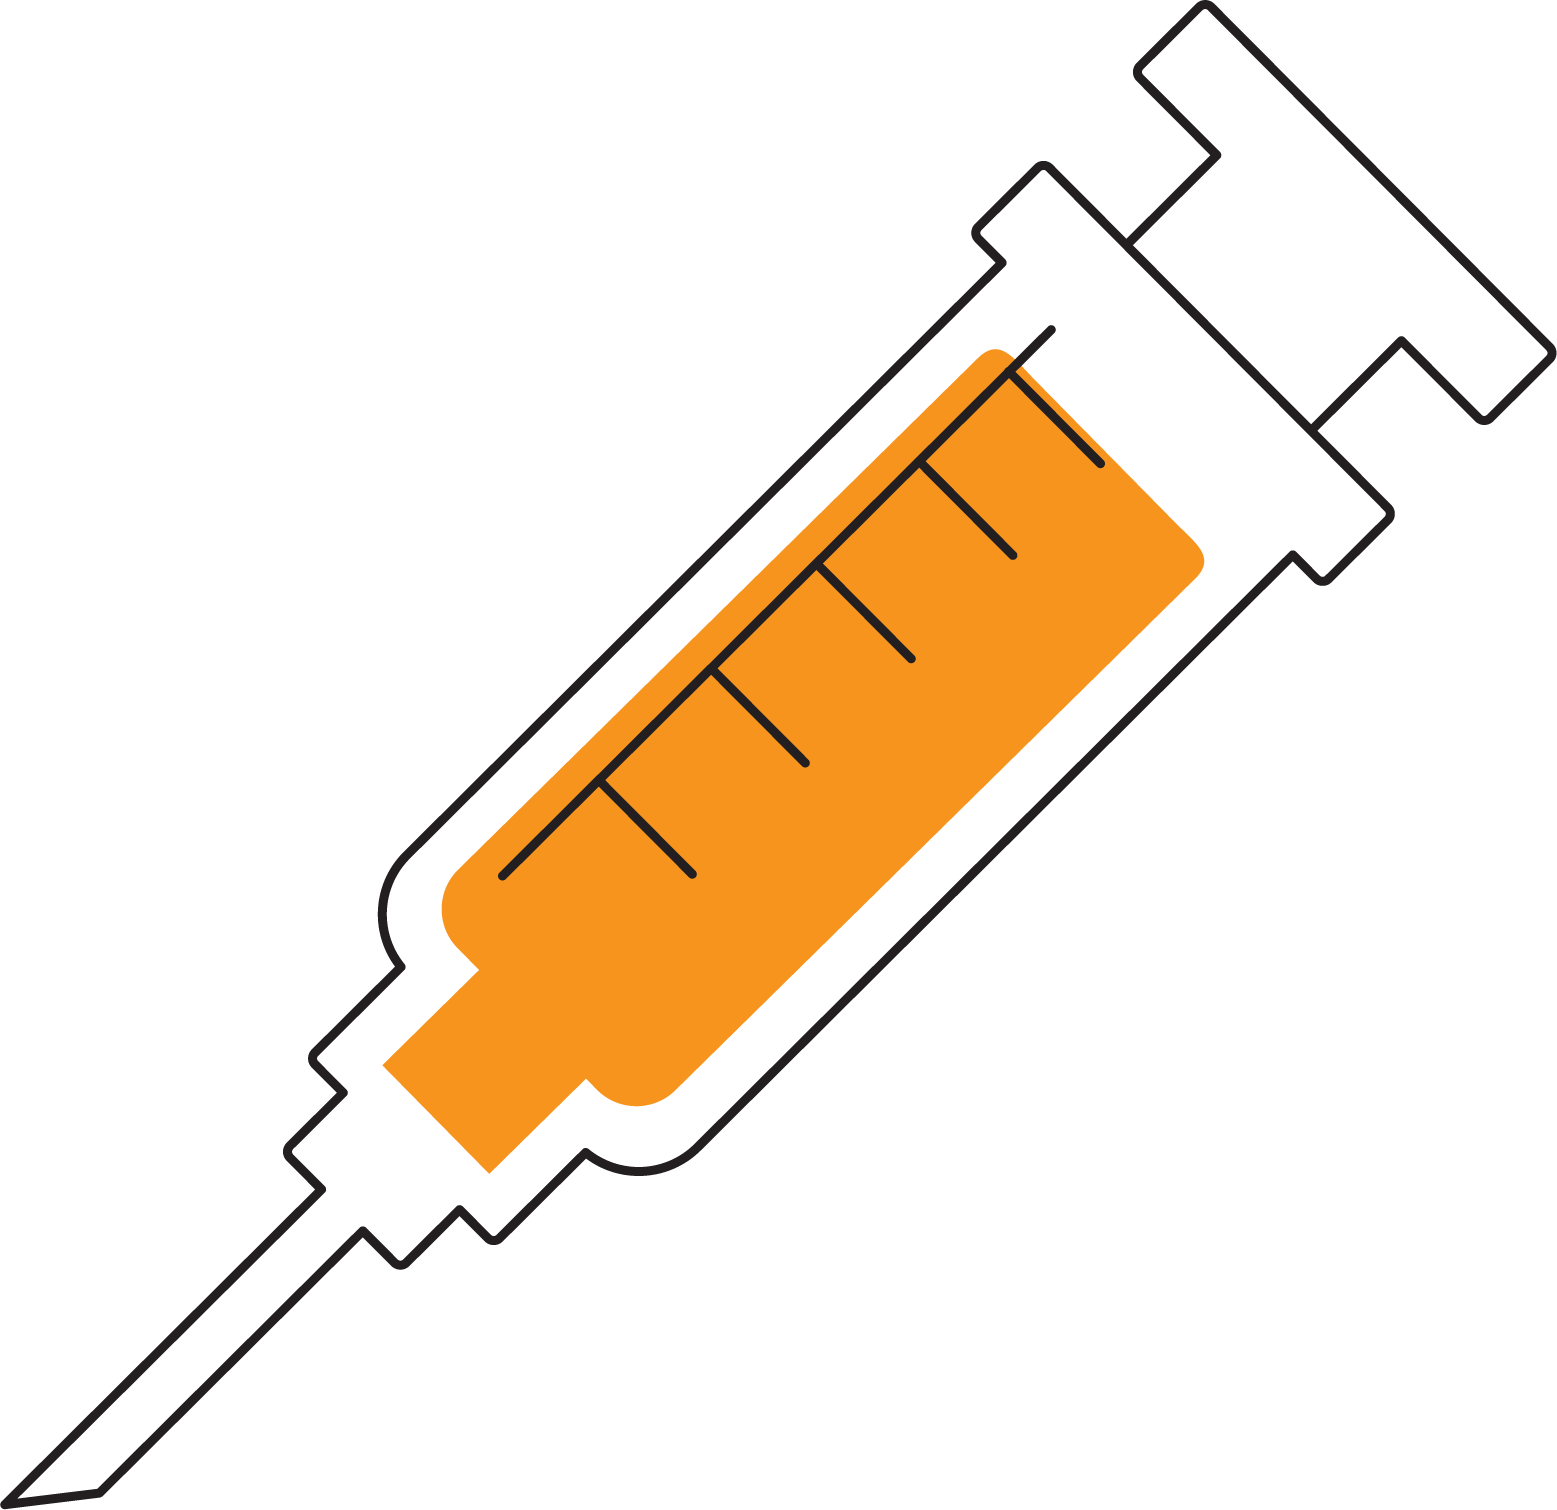 Syringe Injection Hypodermic needle Clip art - Orange syringe png ...